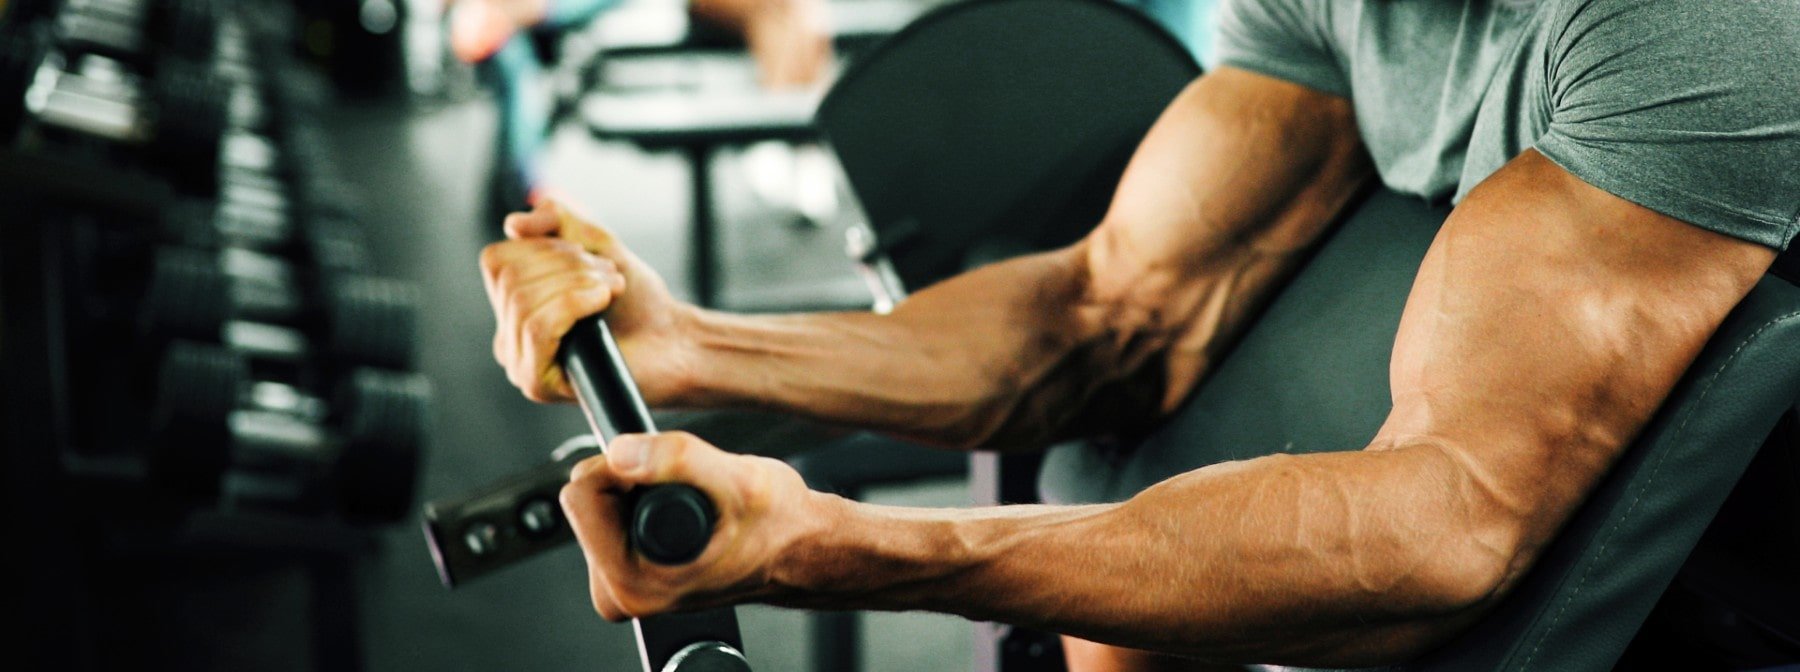 Program de antrenament și sfaturi de nutriție pentru creșterea masei musculare